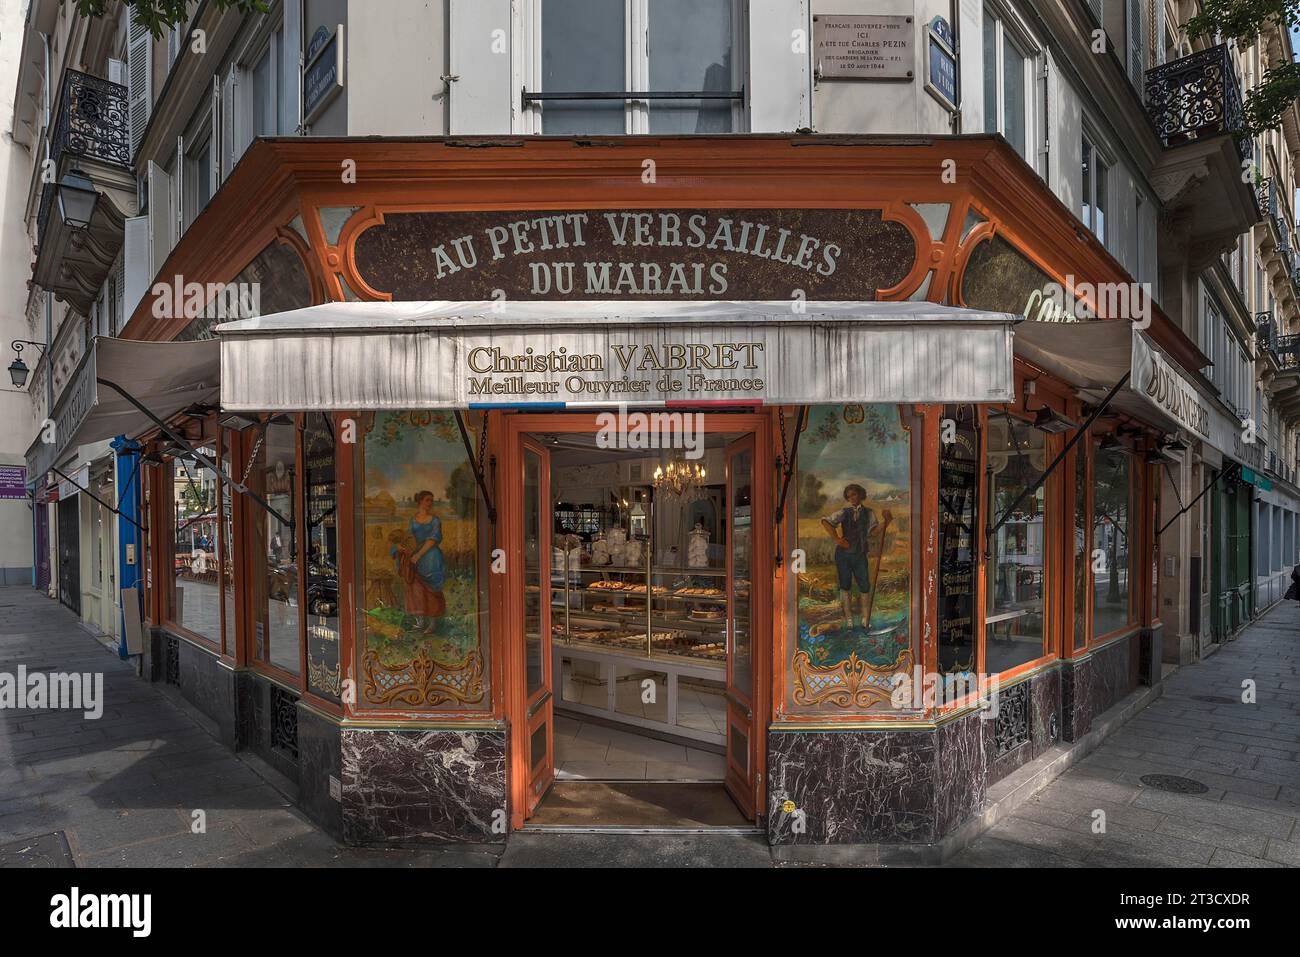 Au Petit Versailles du Marais, traditional French bakery and patisserie, Paris, France Stock Photo